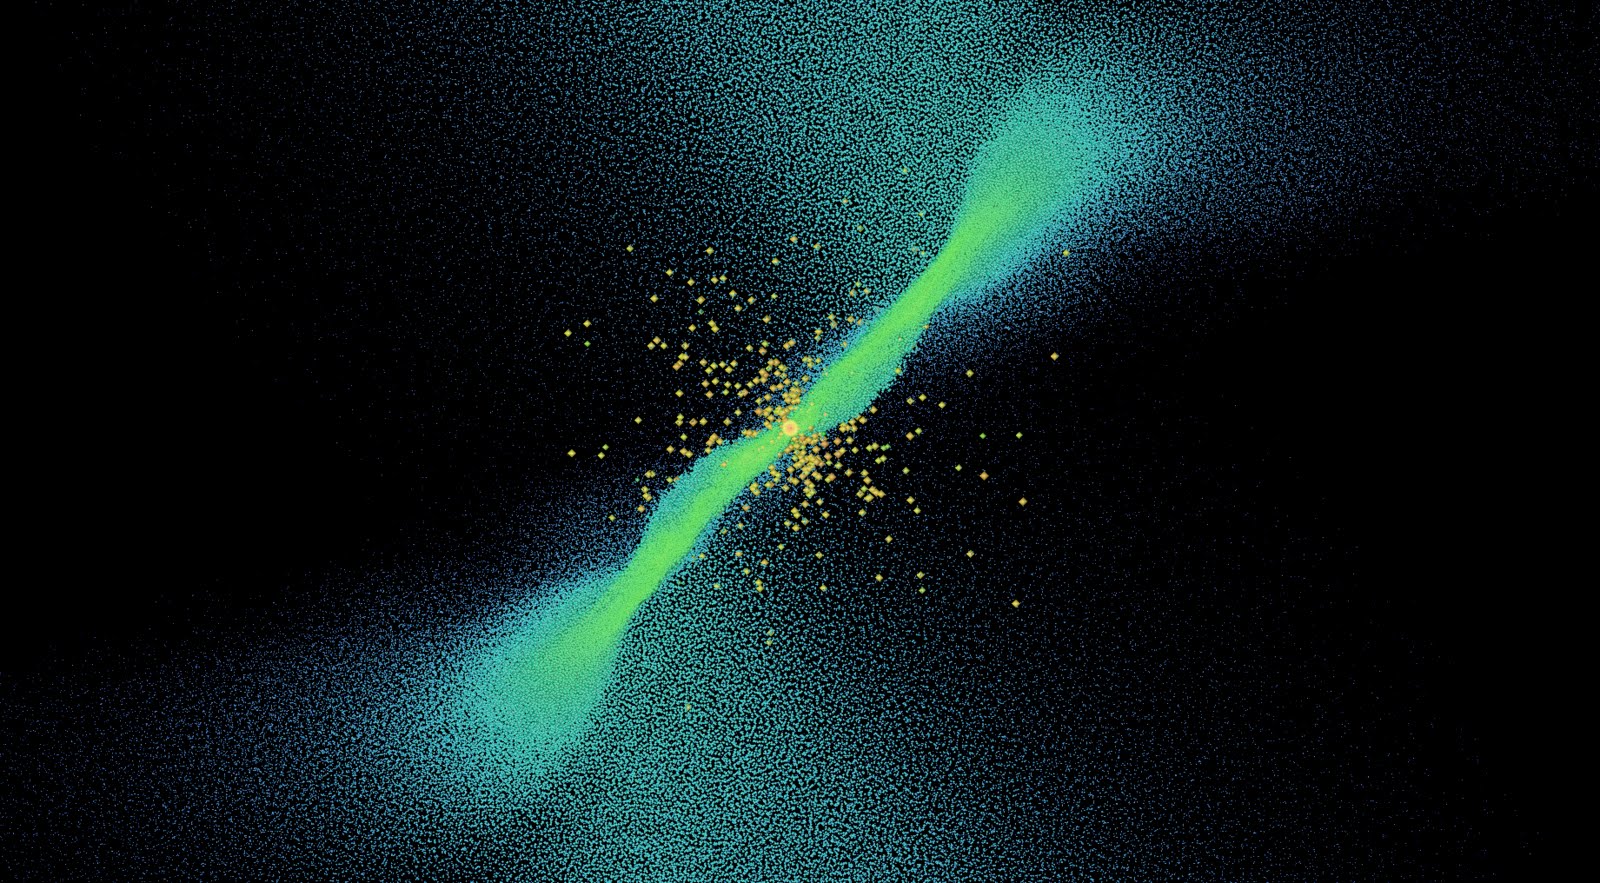 simulacion de la formacion de un cluster mediante una colision